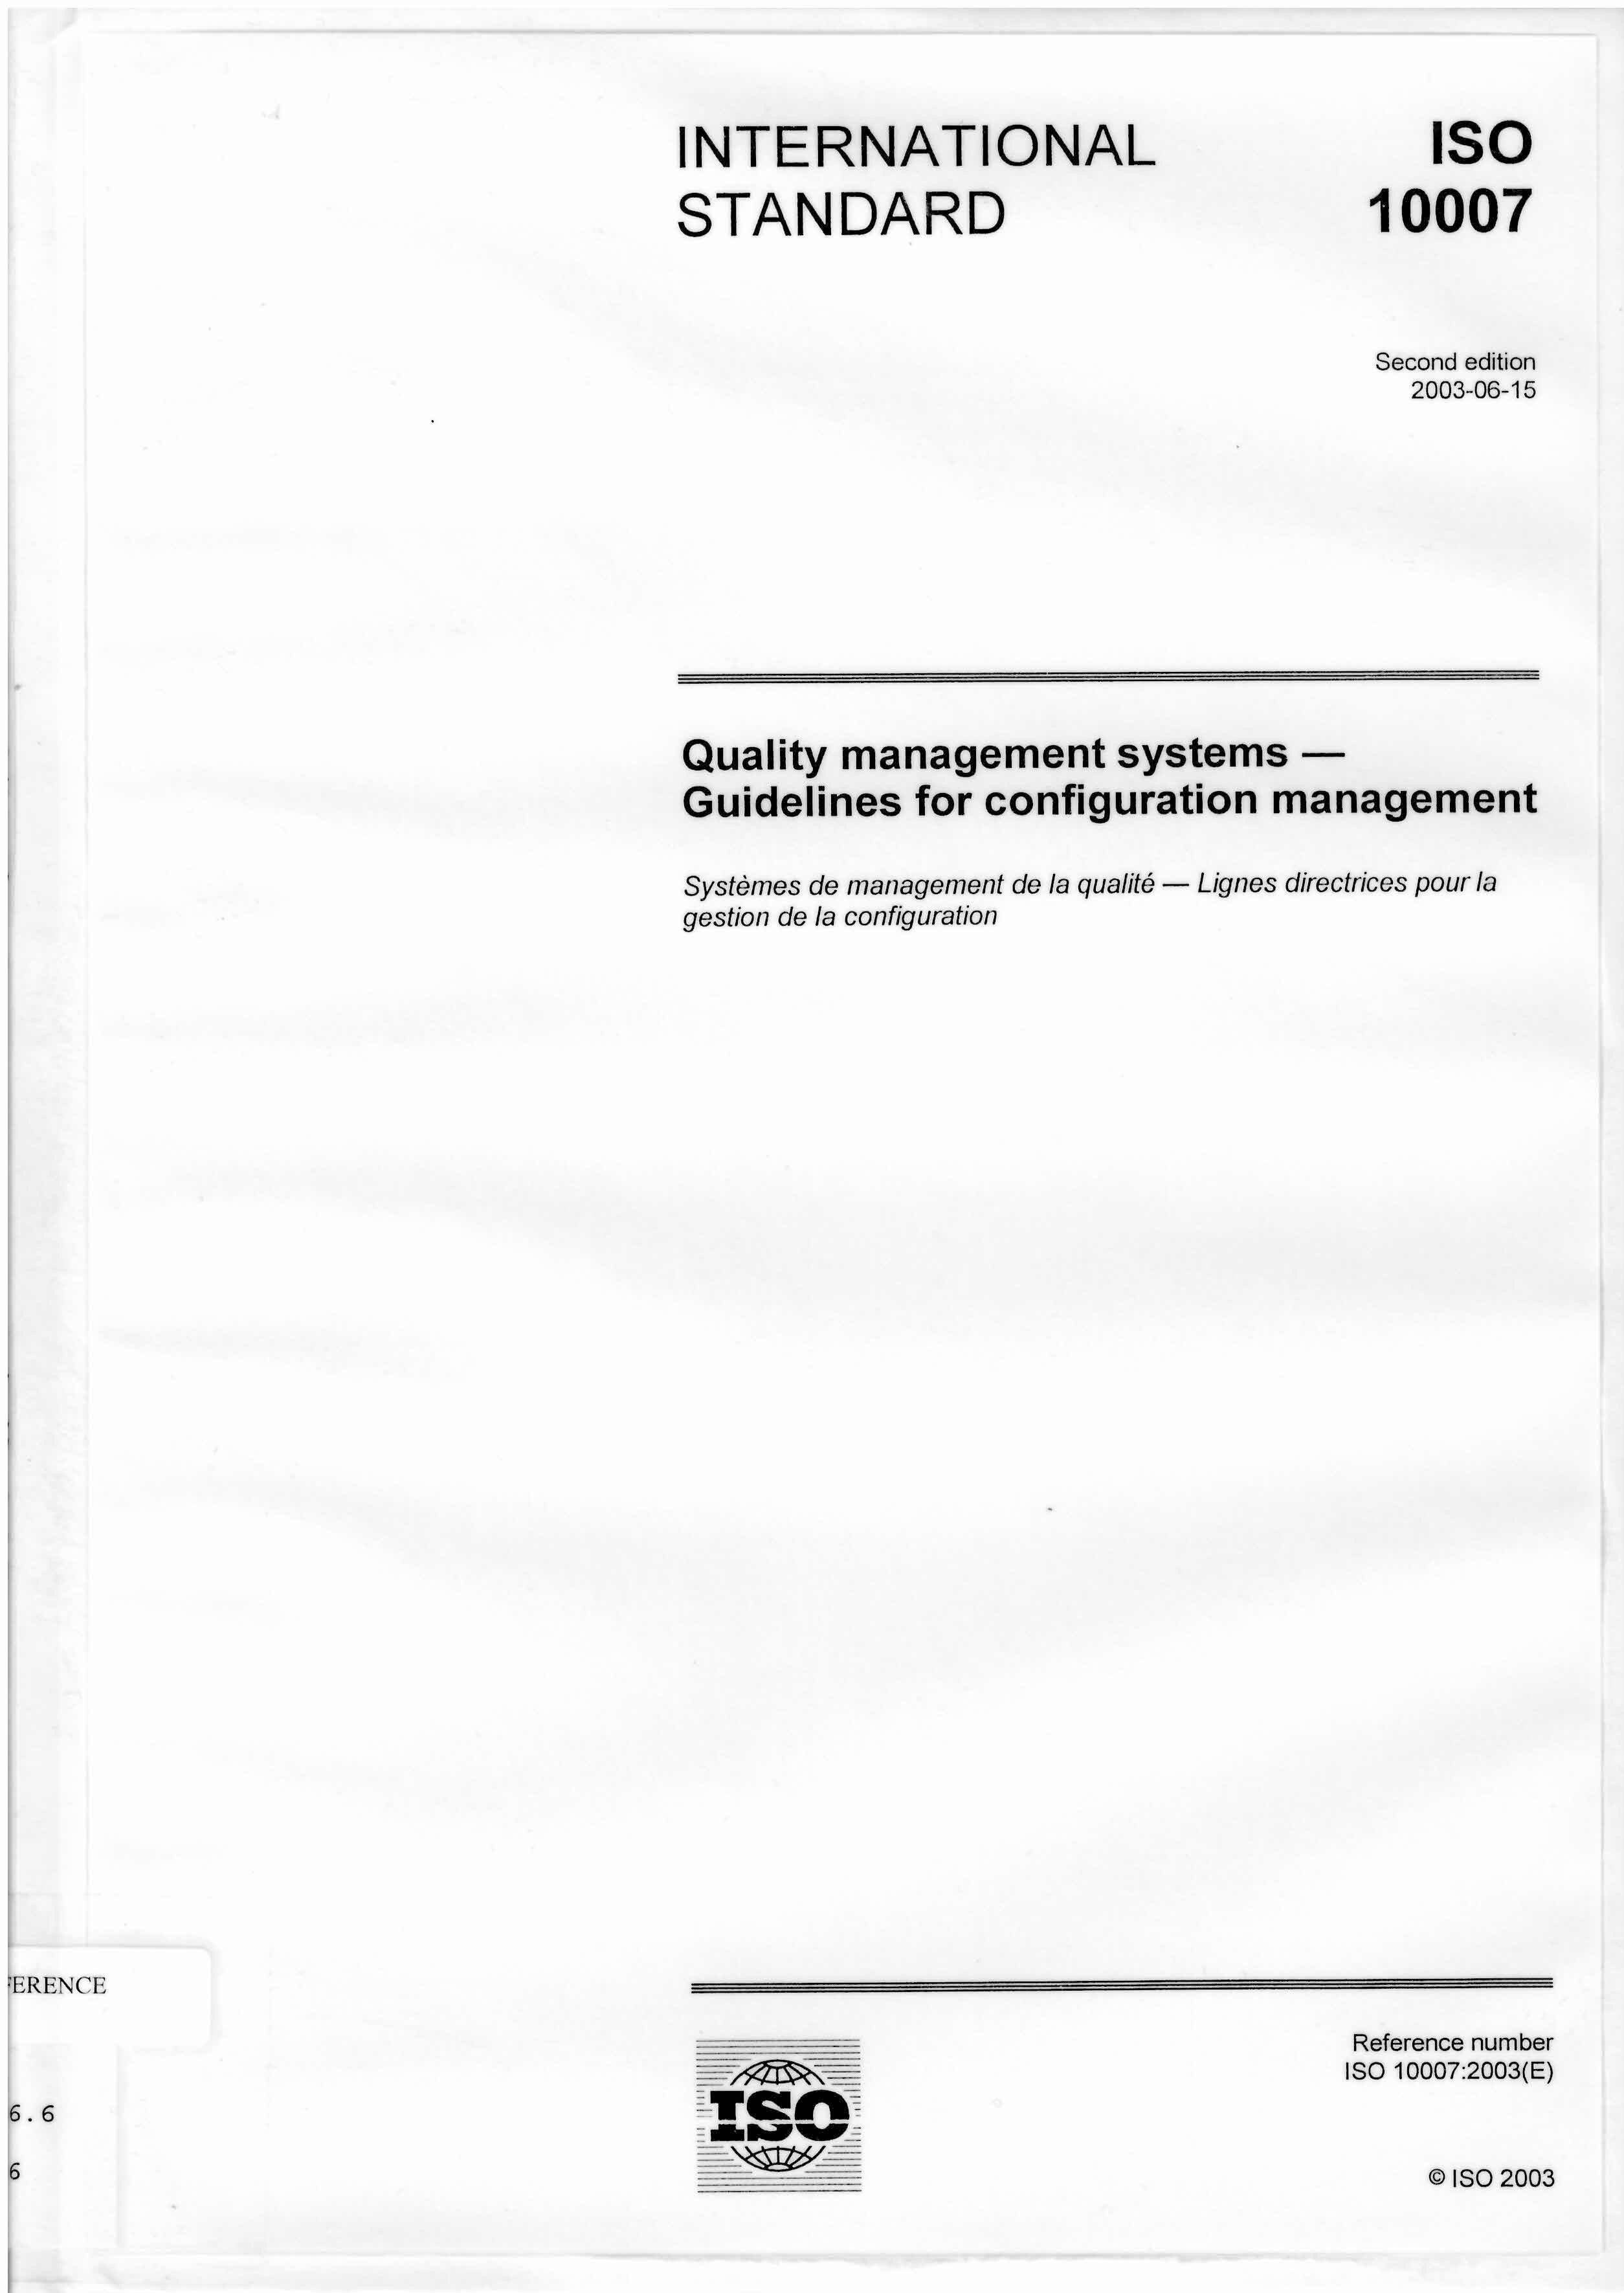 Quality management systems : guidelines for configuration management = Systemes de management de la qualite - lignes directrices pour la gestion de la configuration.